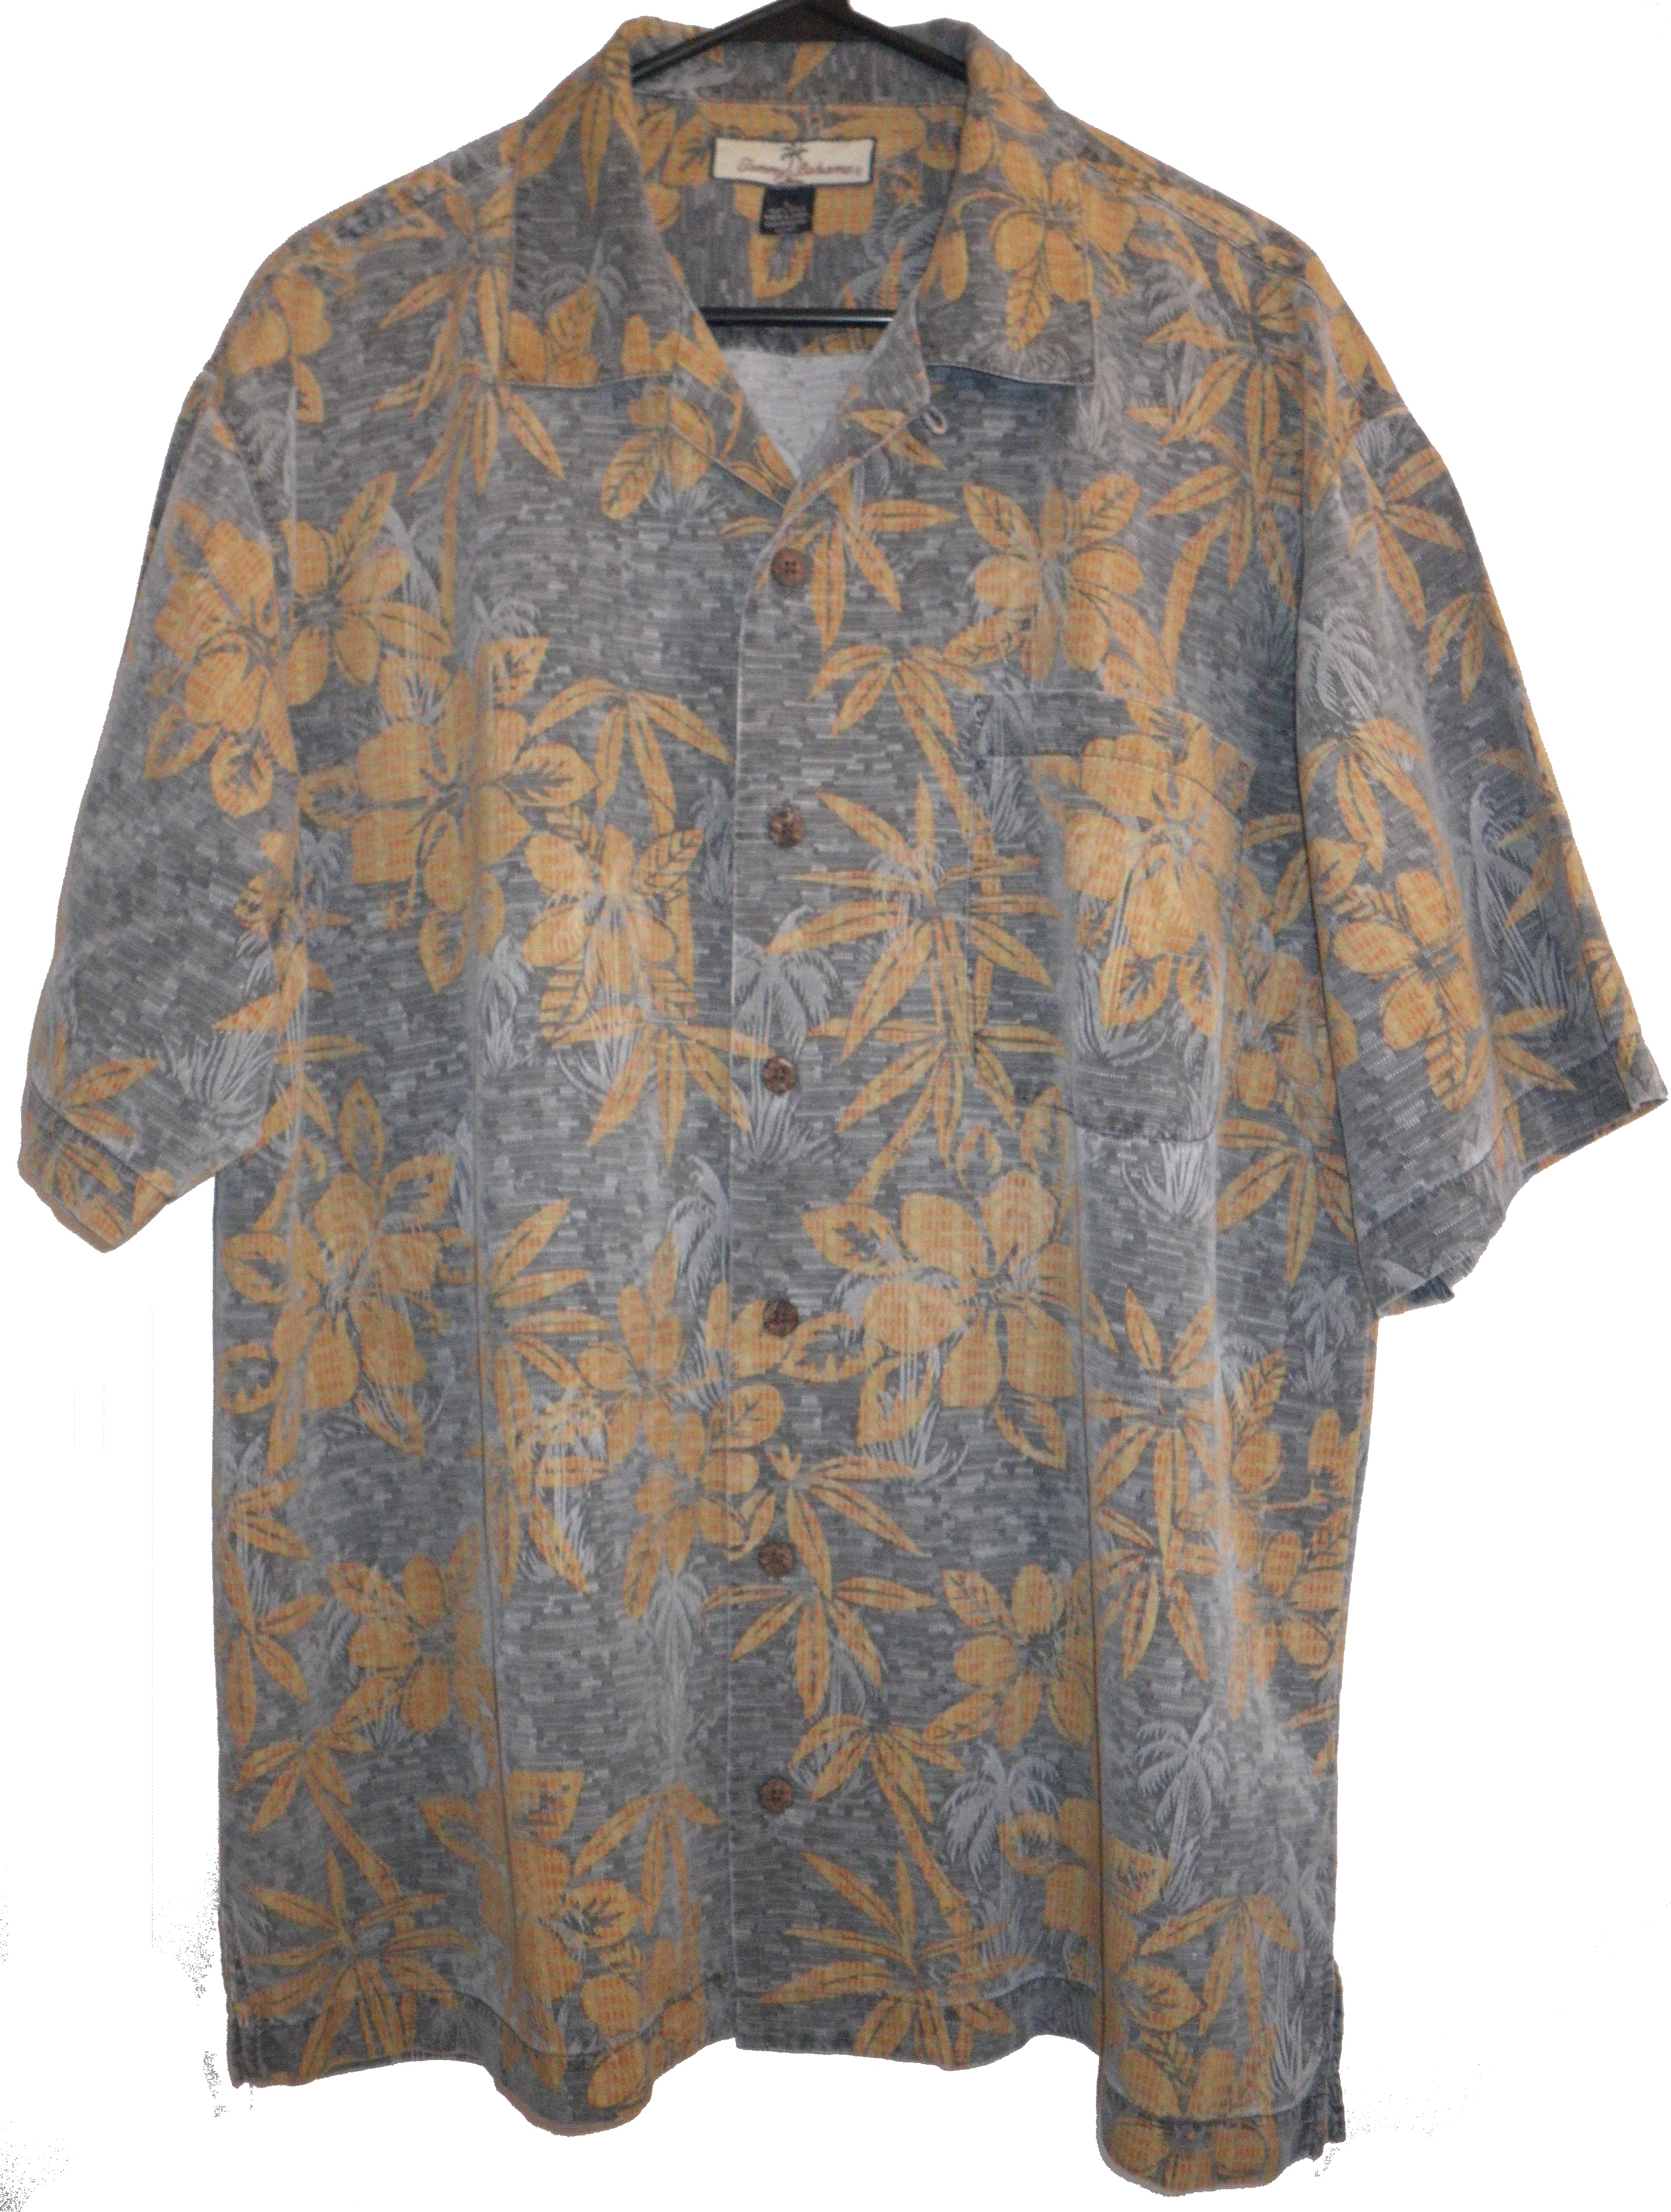 tommy bahama aloha shirts